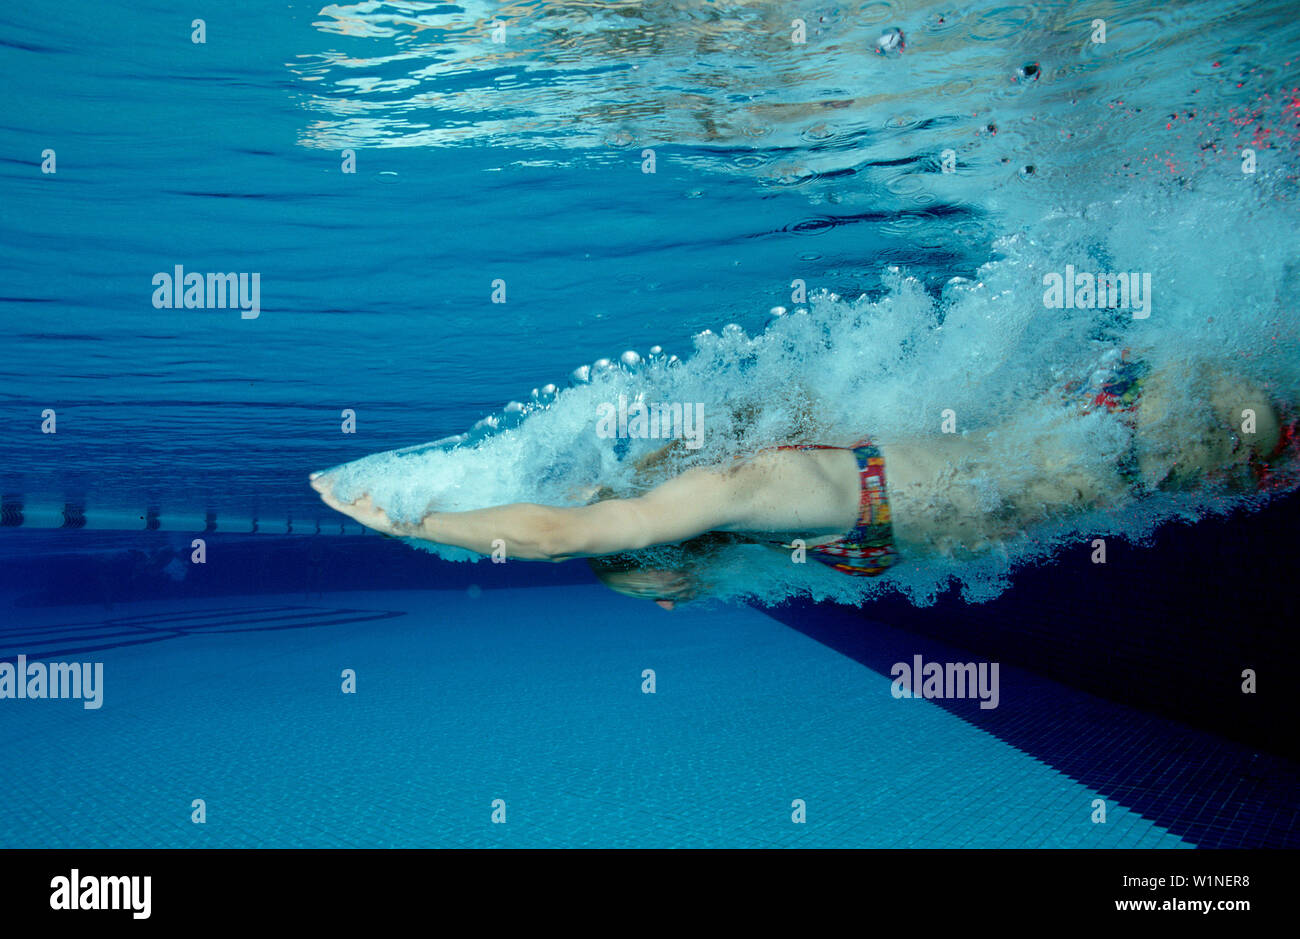 Frau springt Schwimmbecken en femme, sauts en nage, sauts femme in swimming pool Banque D'Images